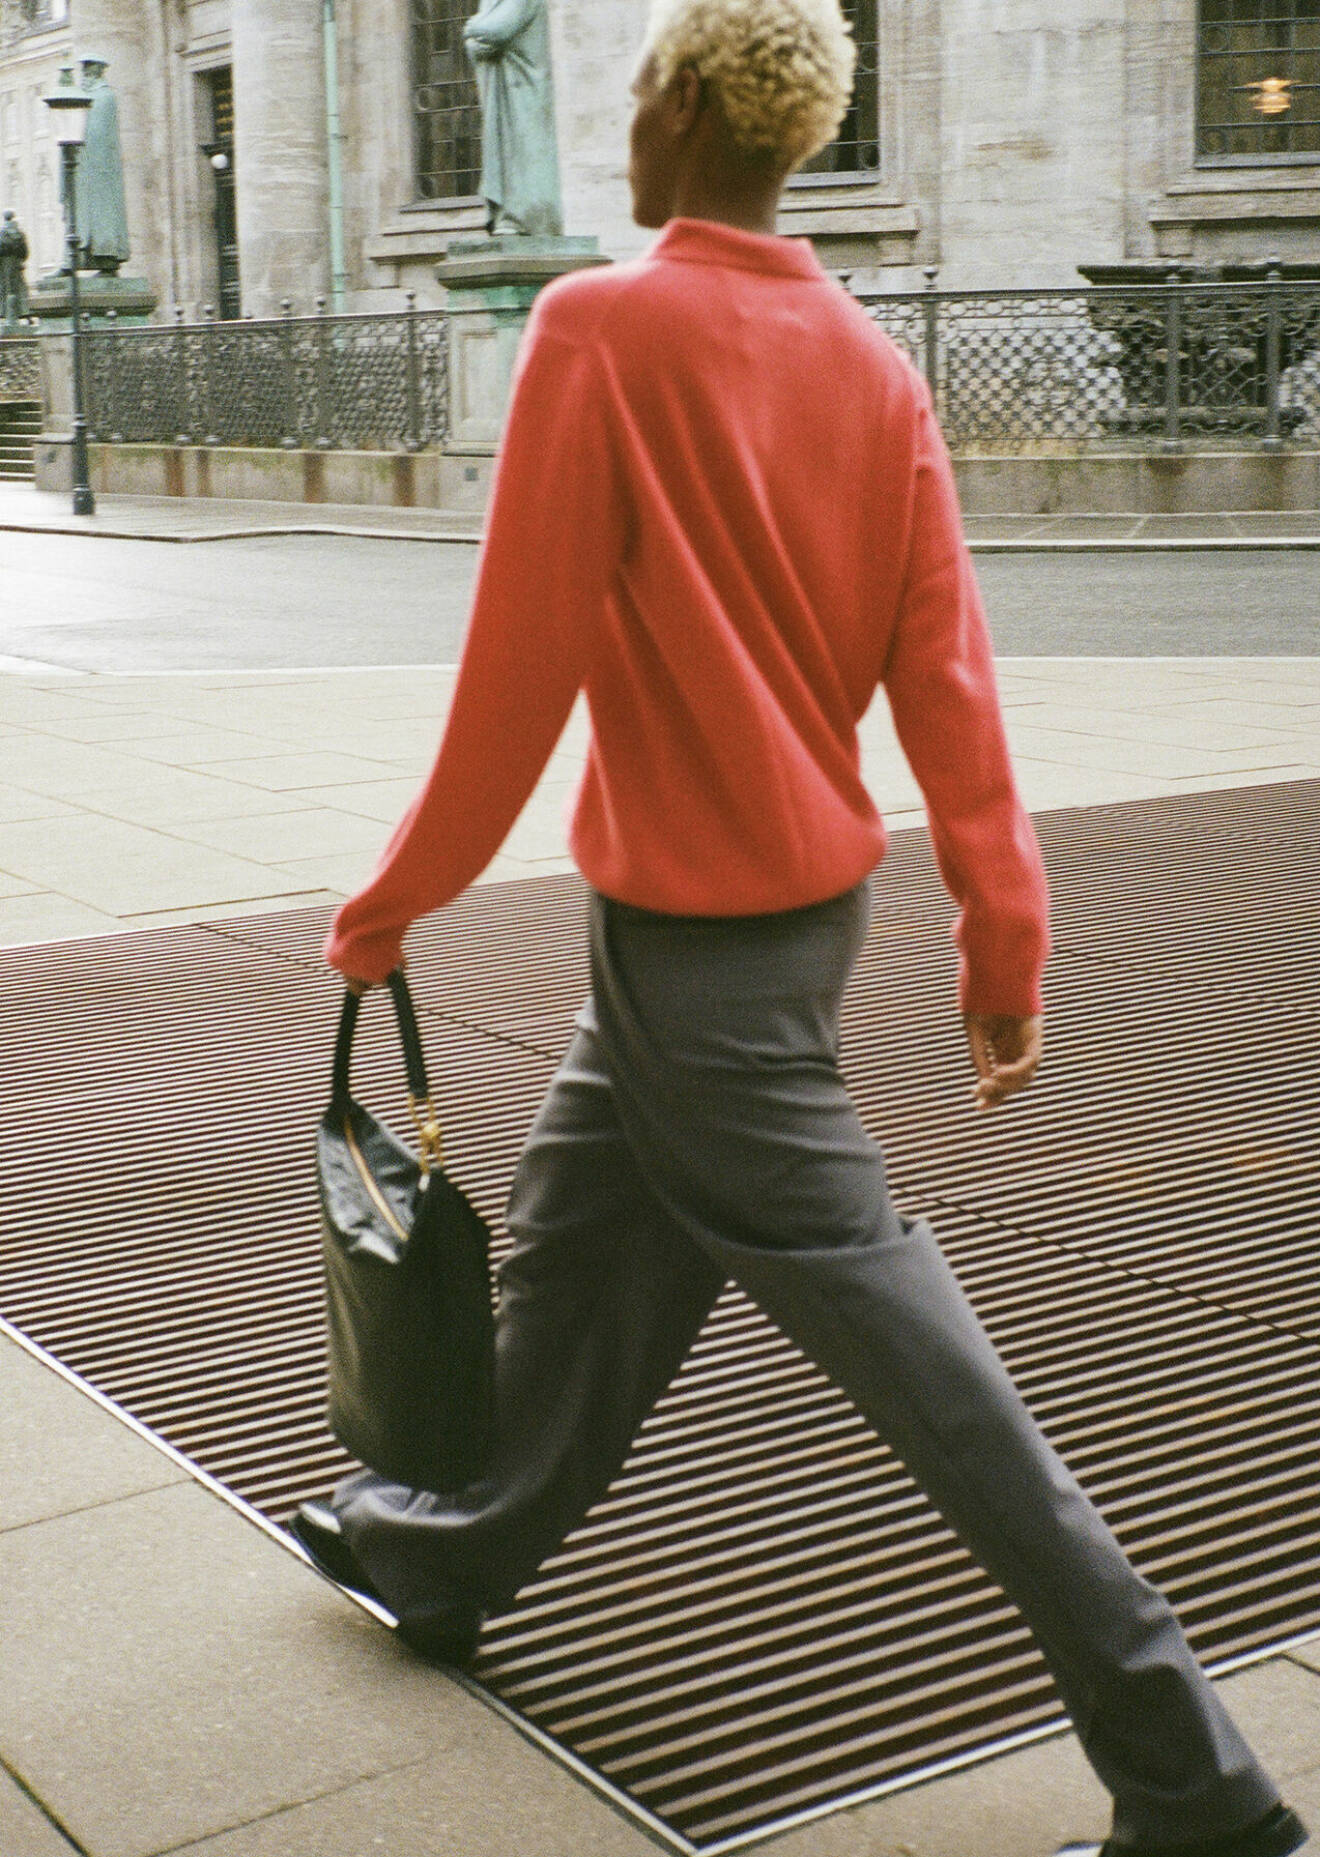 Fotomodellen har på sig en röd tröja, grå byxor och en svart handväska.